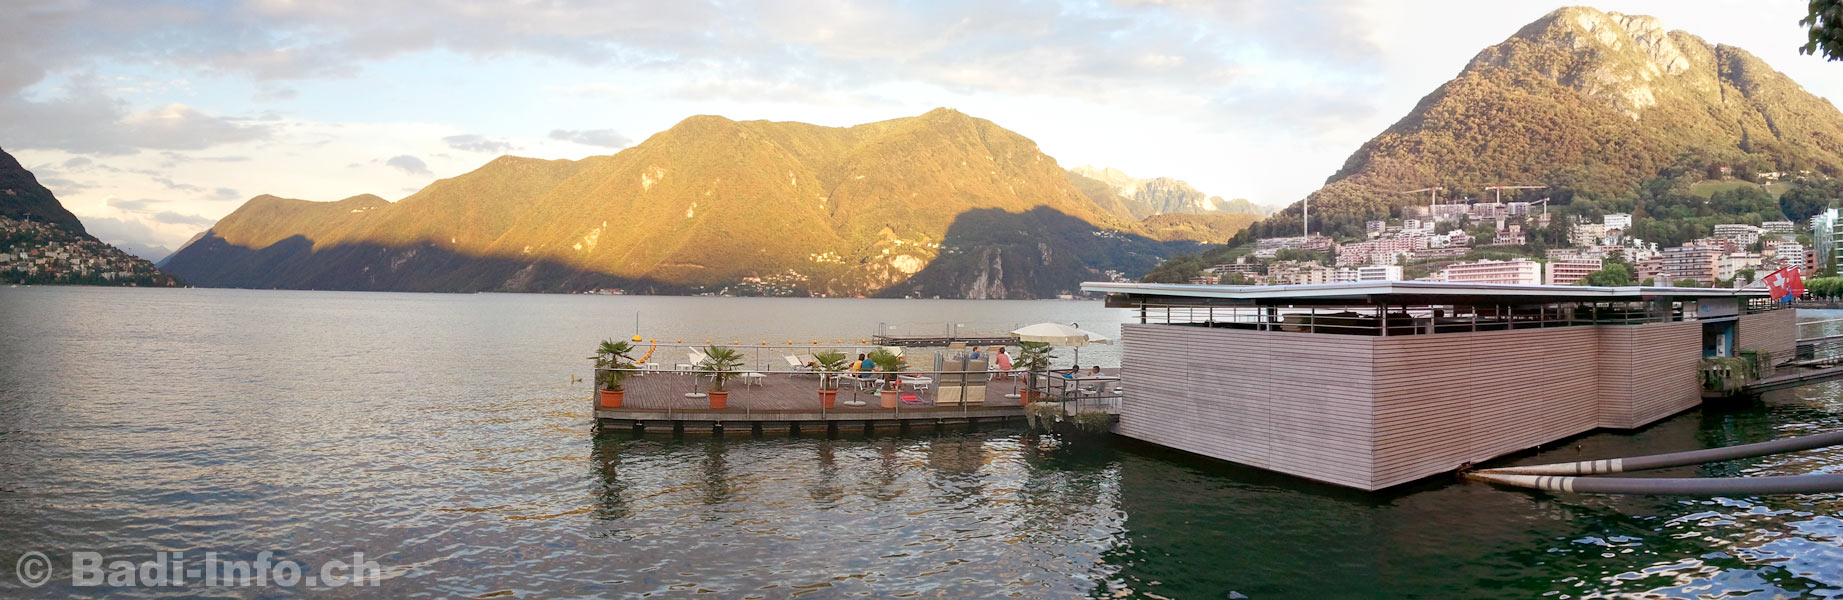 Lido Caccia Lugano Lago